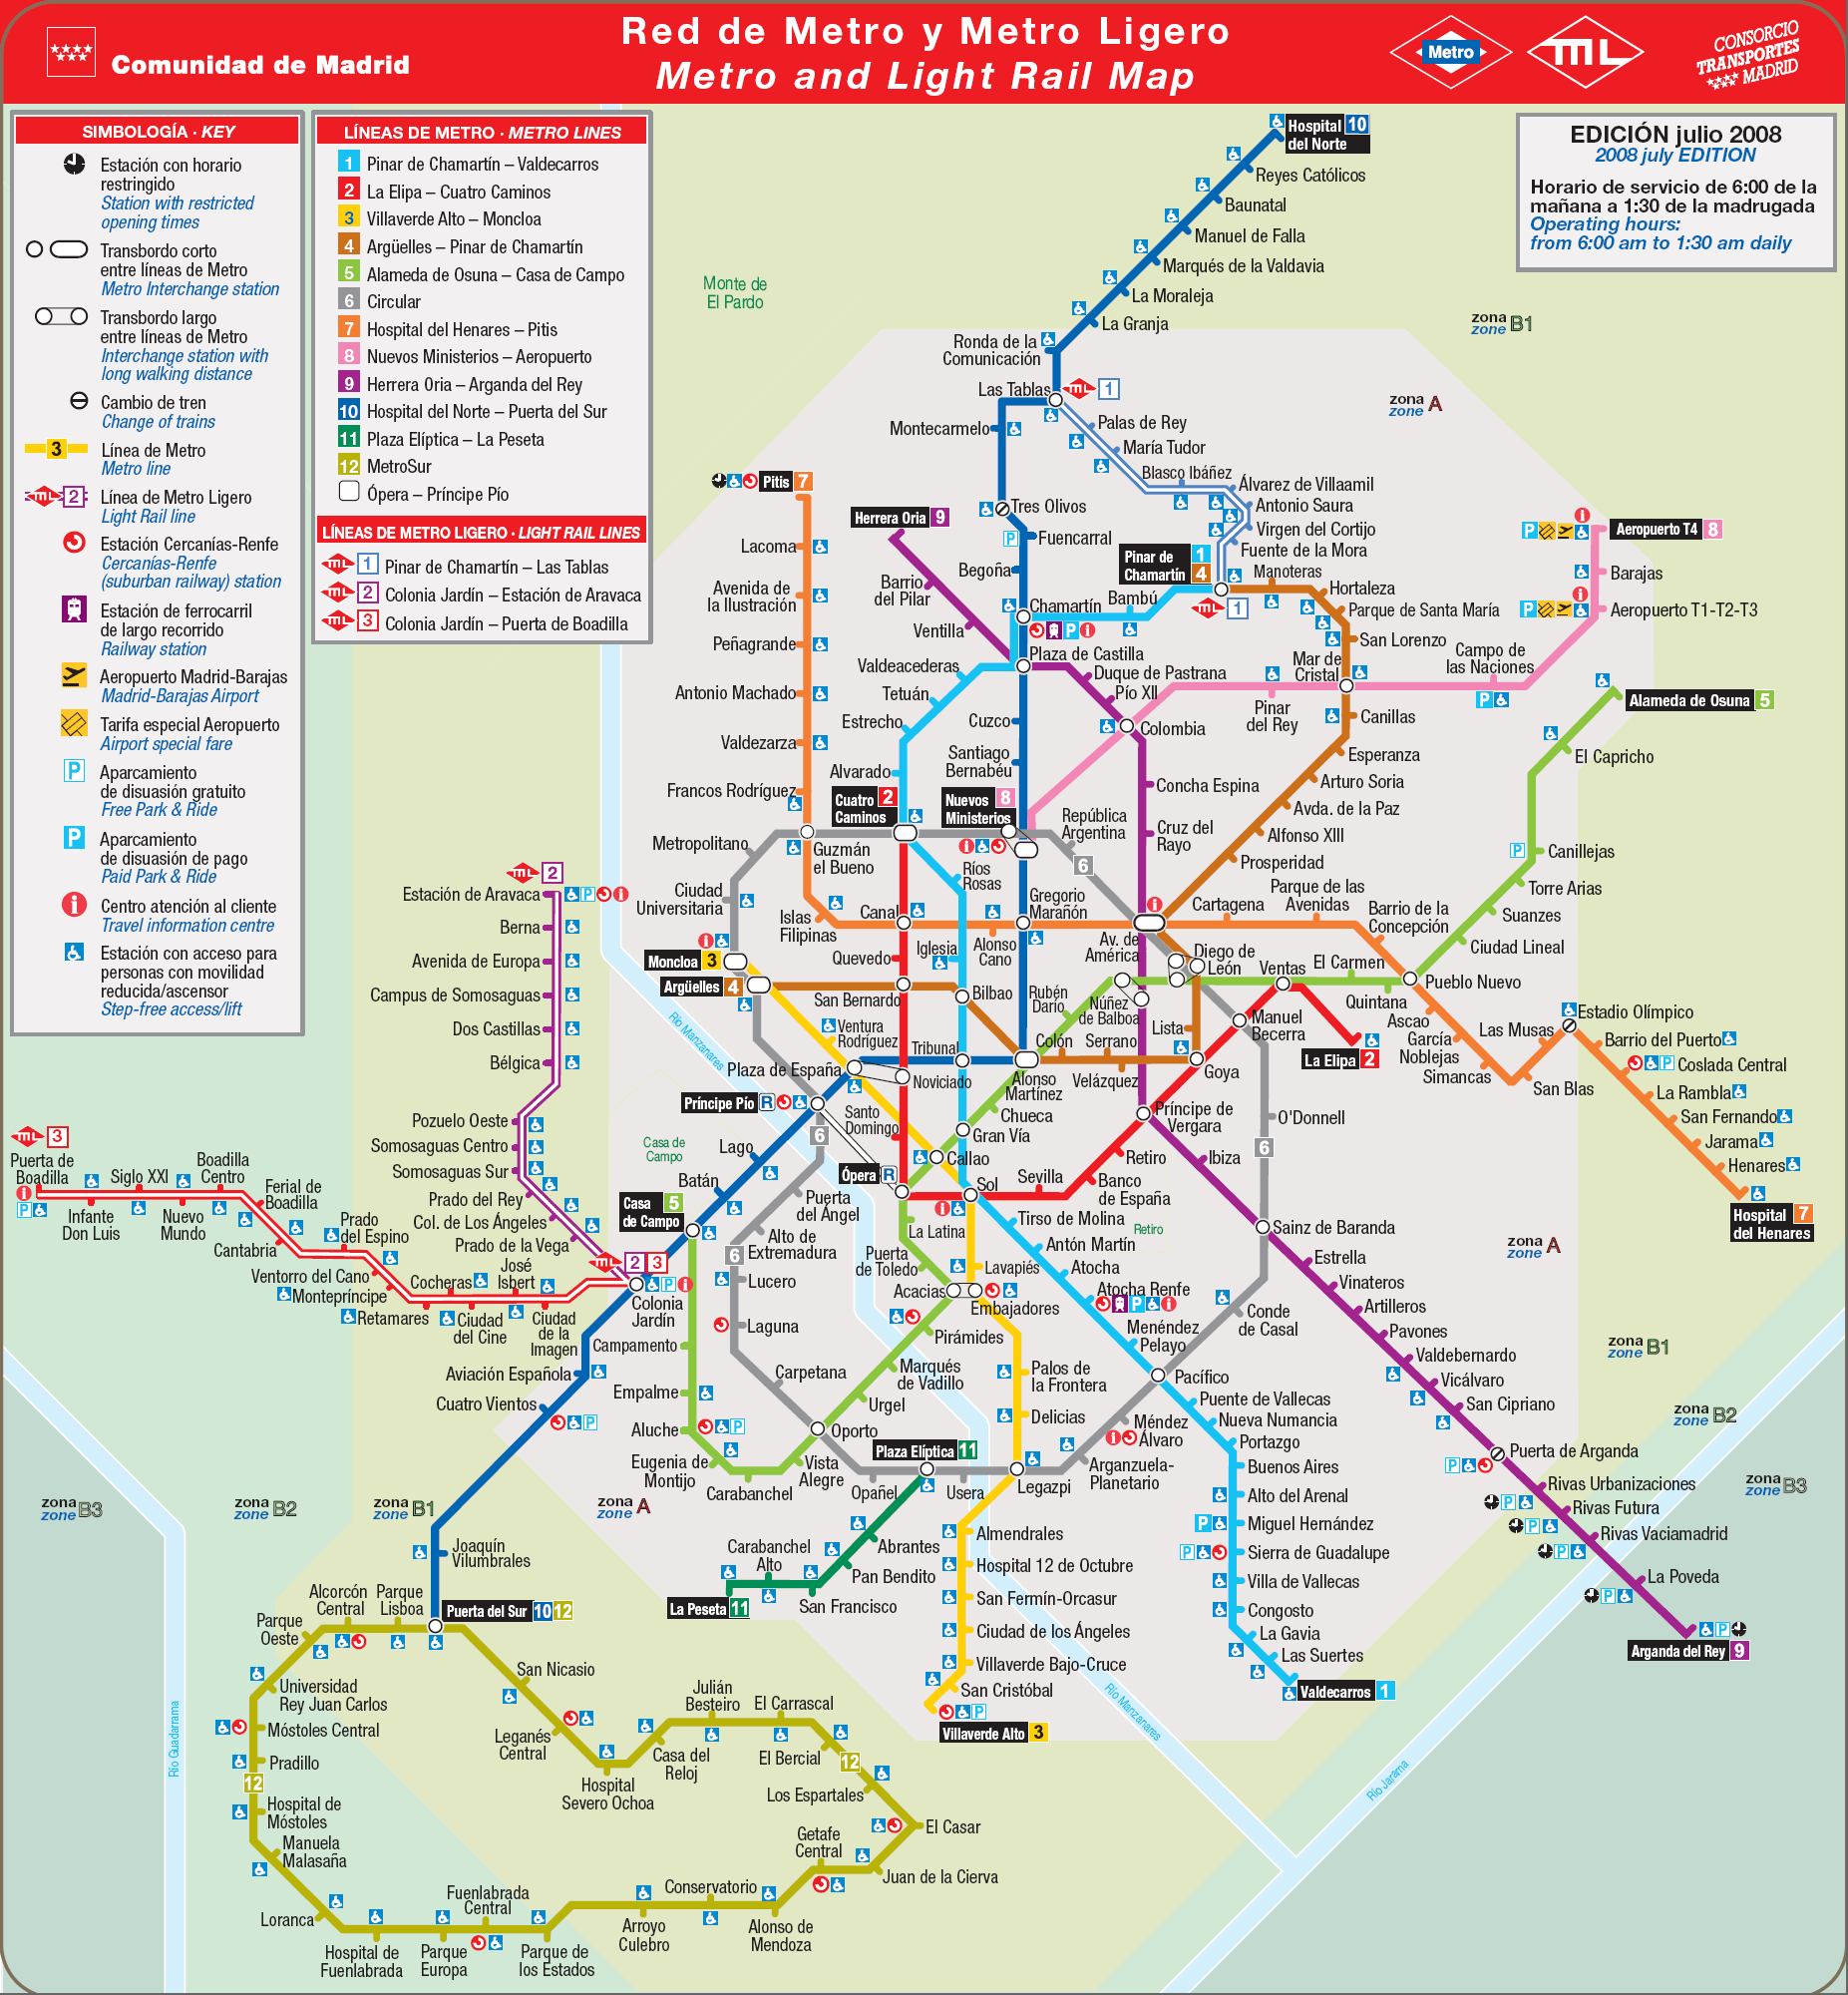 Подробная схема метро Мадрида